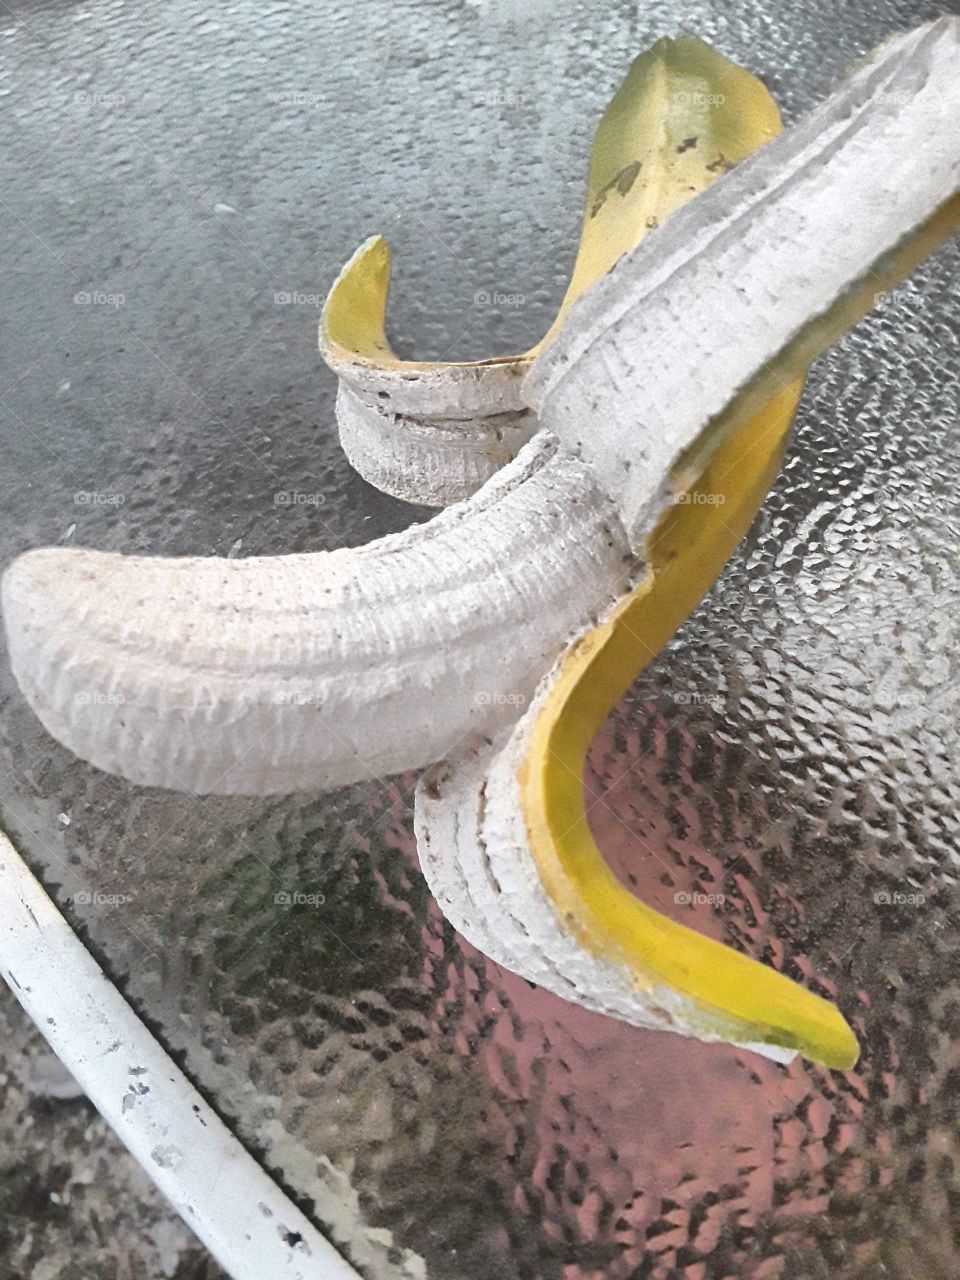 my banana statue